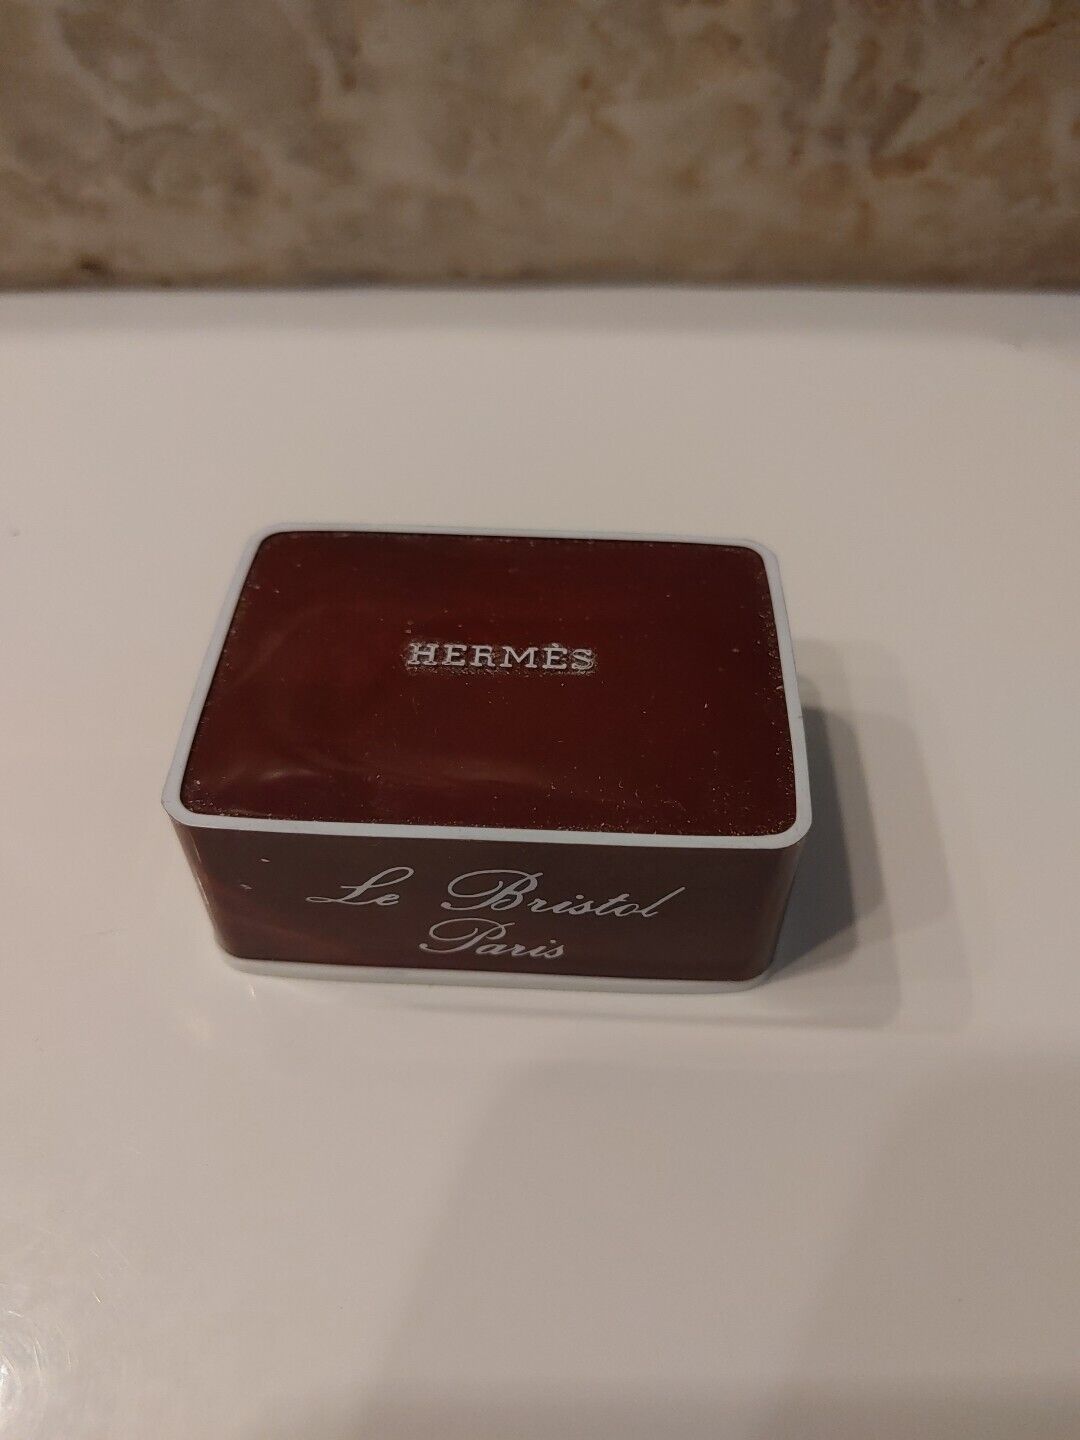 Hermes Amazone 24 g Savon Parfume Soap - Le Bristol Paris